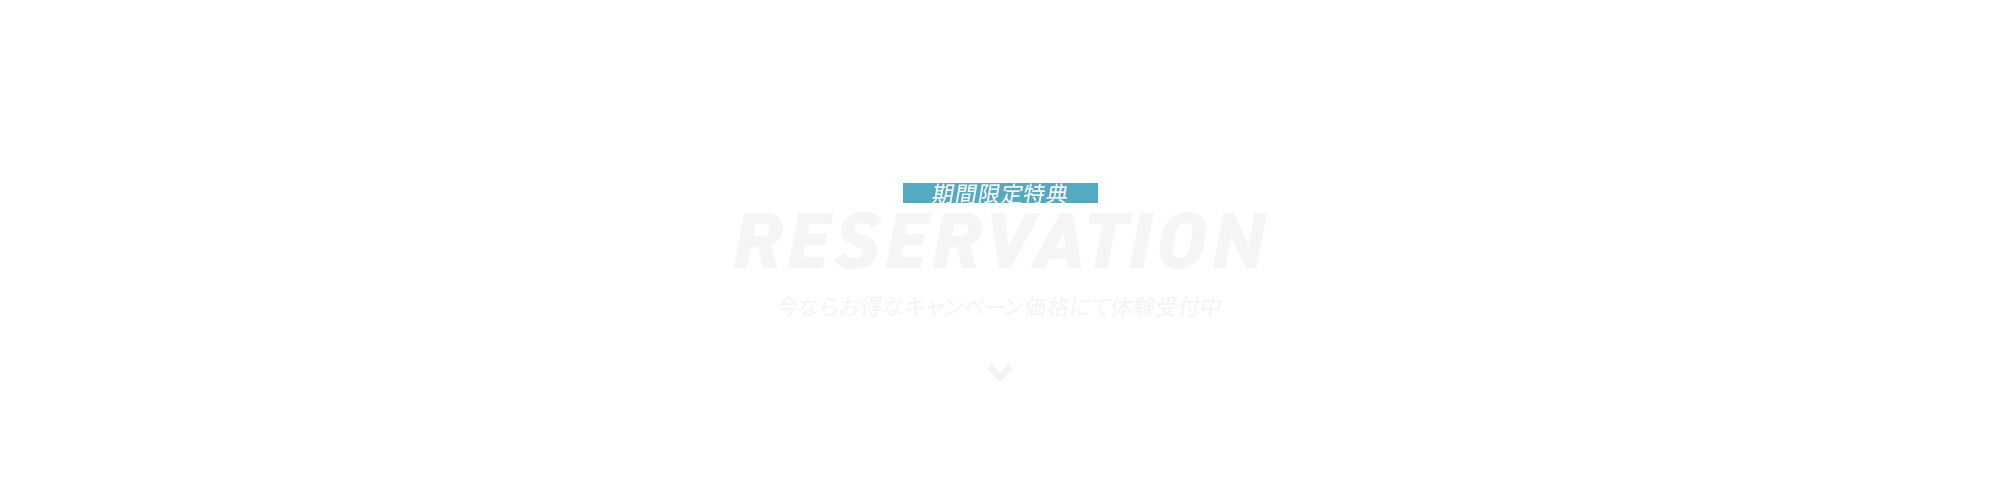 _bnr_reservation_f